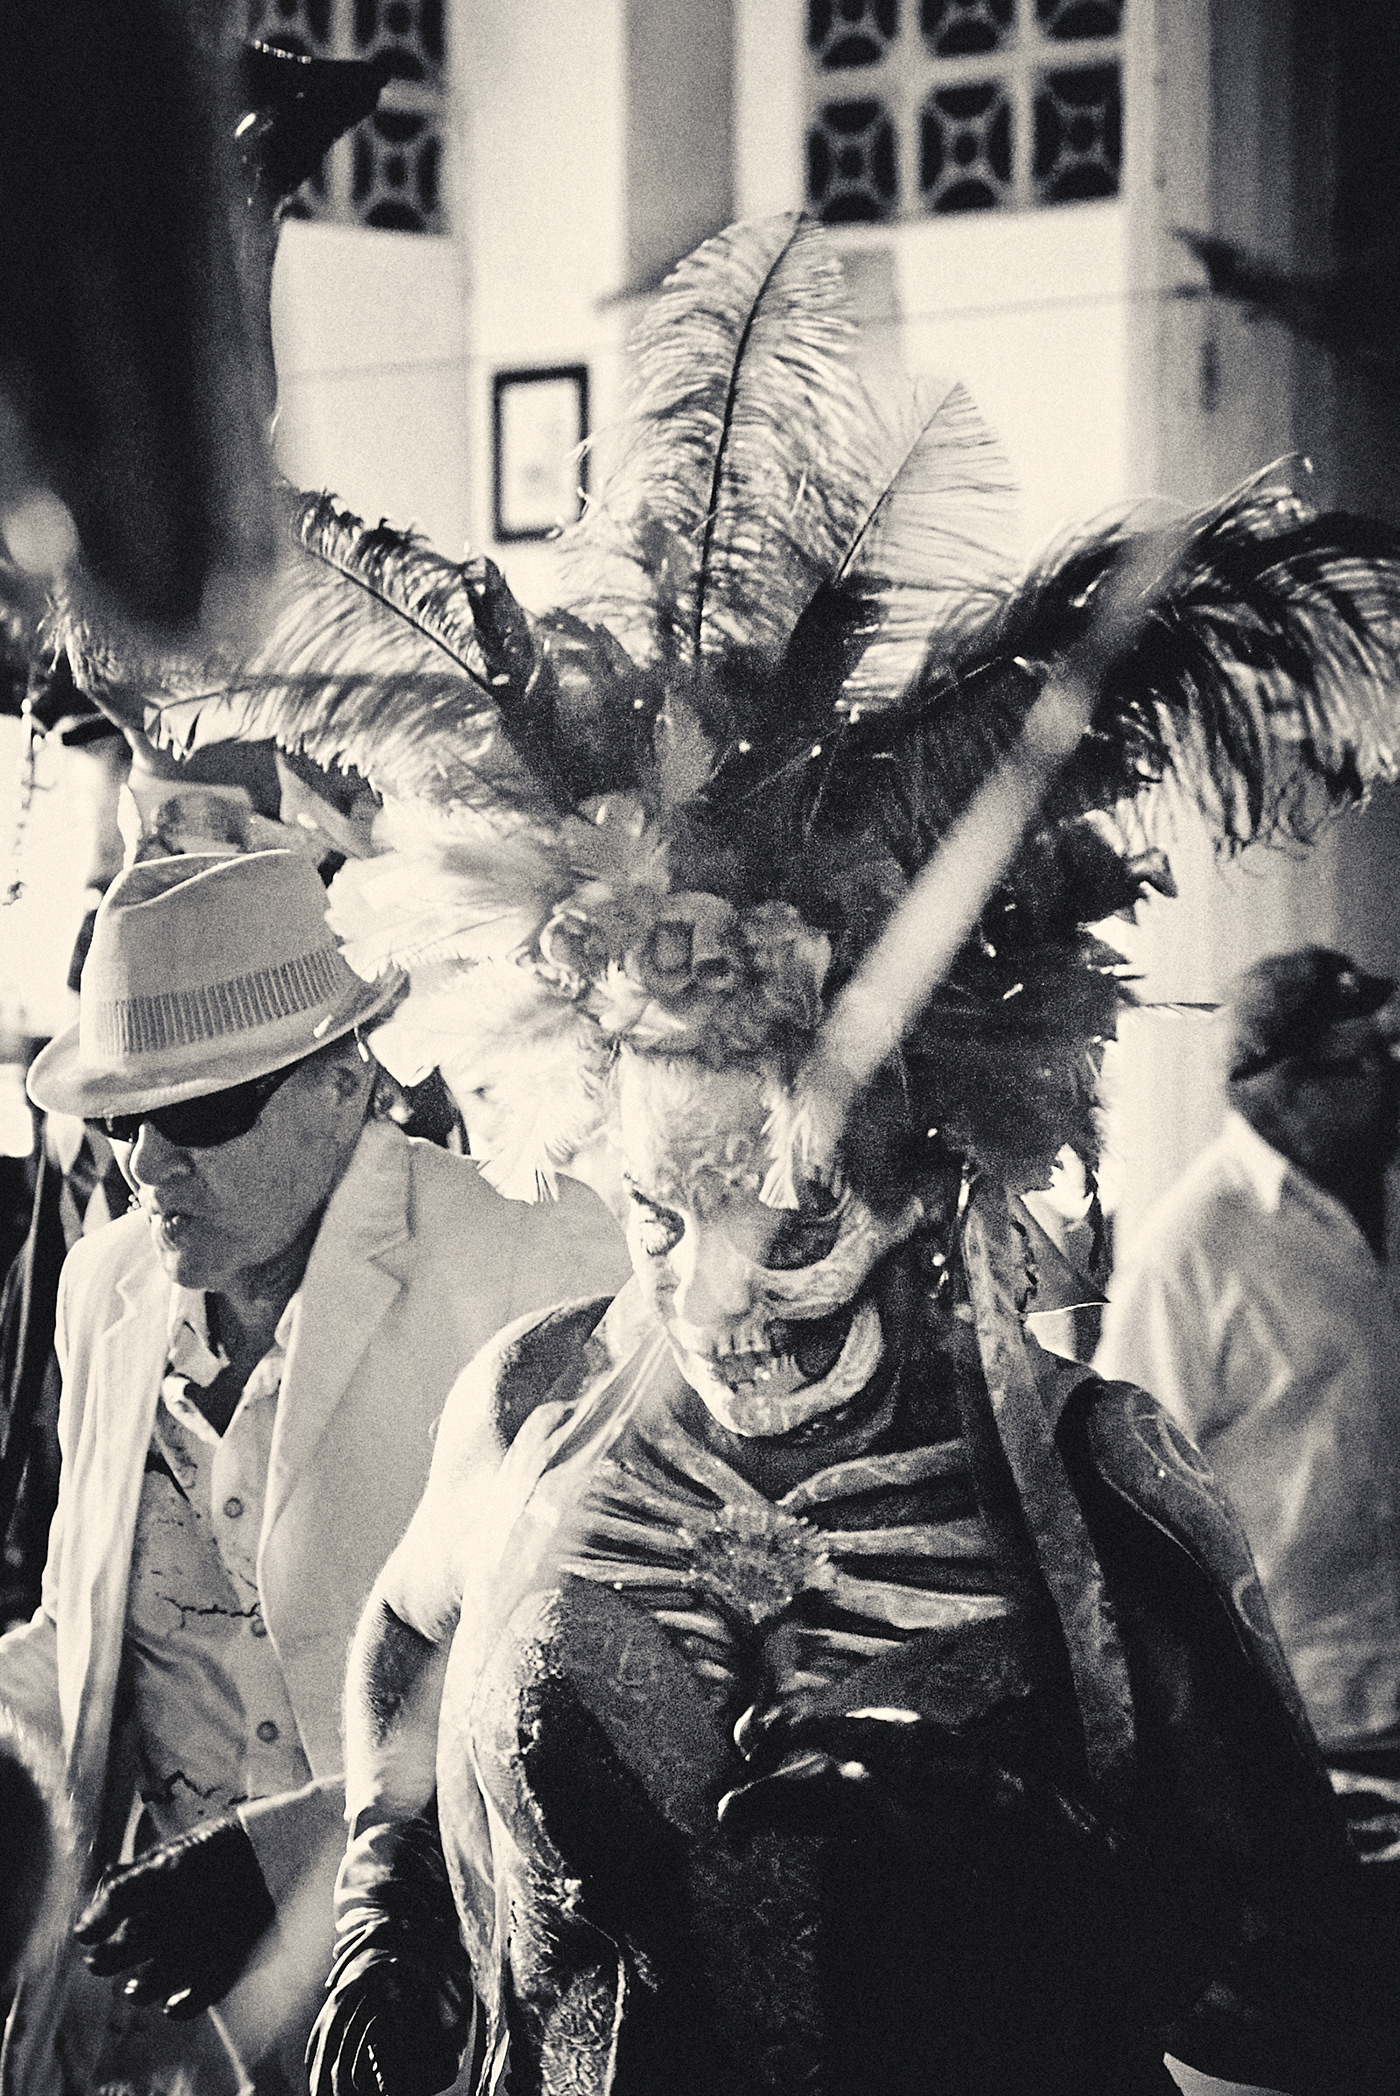 Carnival matt mawson mexico reportage people black and white monochrome